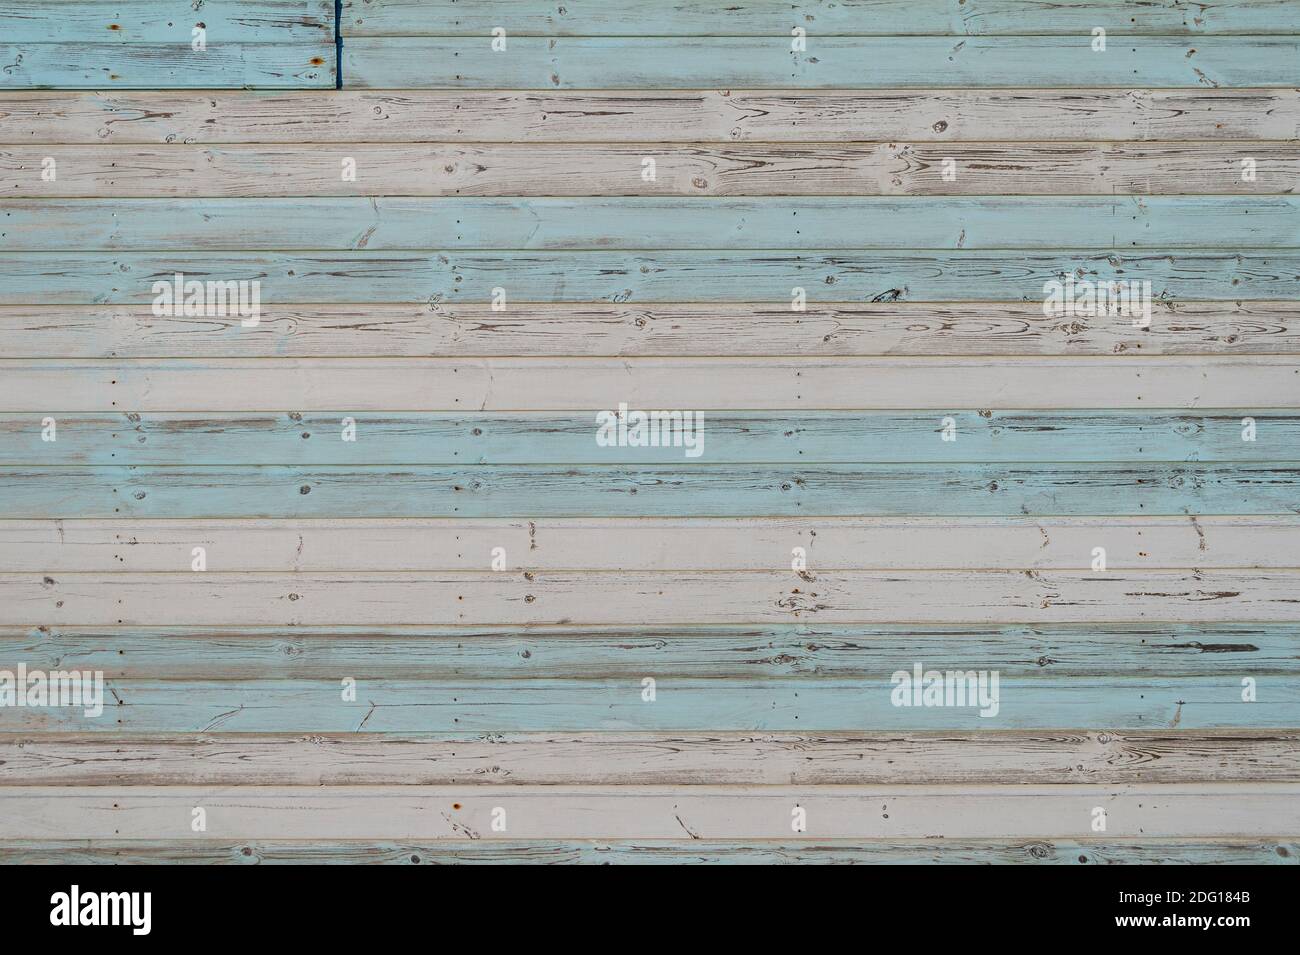 bandes peintes en bleu pastel et blanc sur des panneaux en bois. Arrière-plan. Banque D'Images